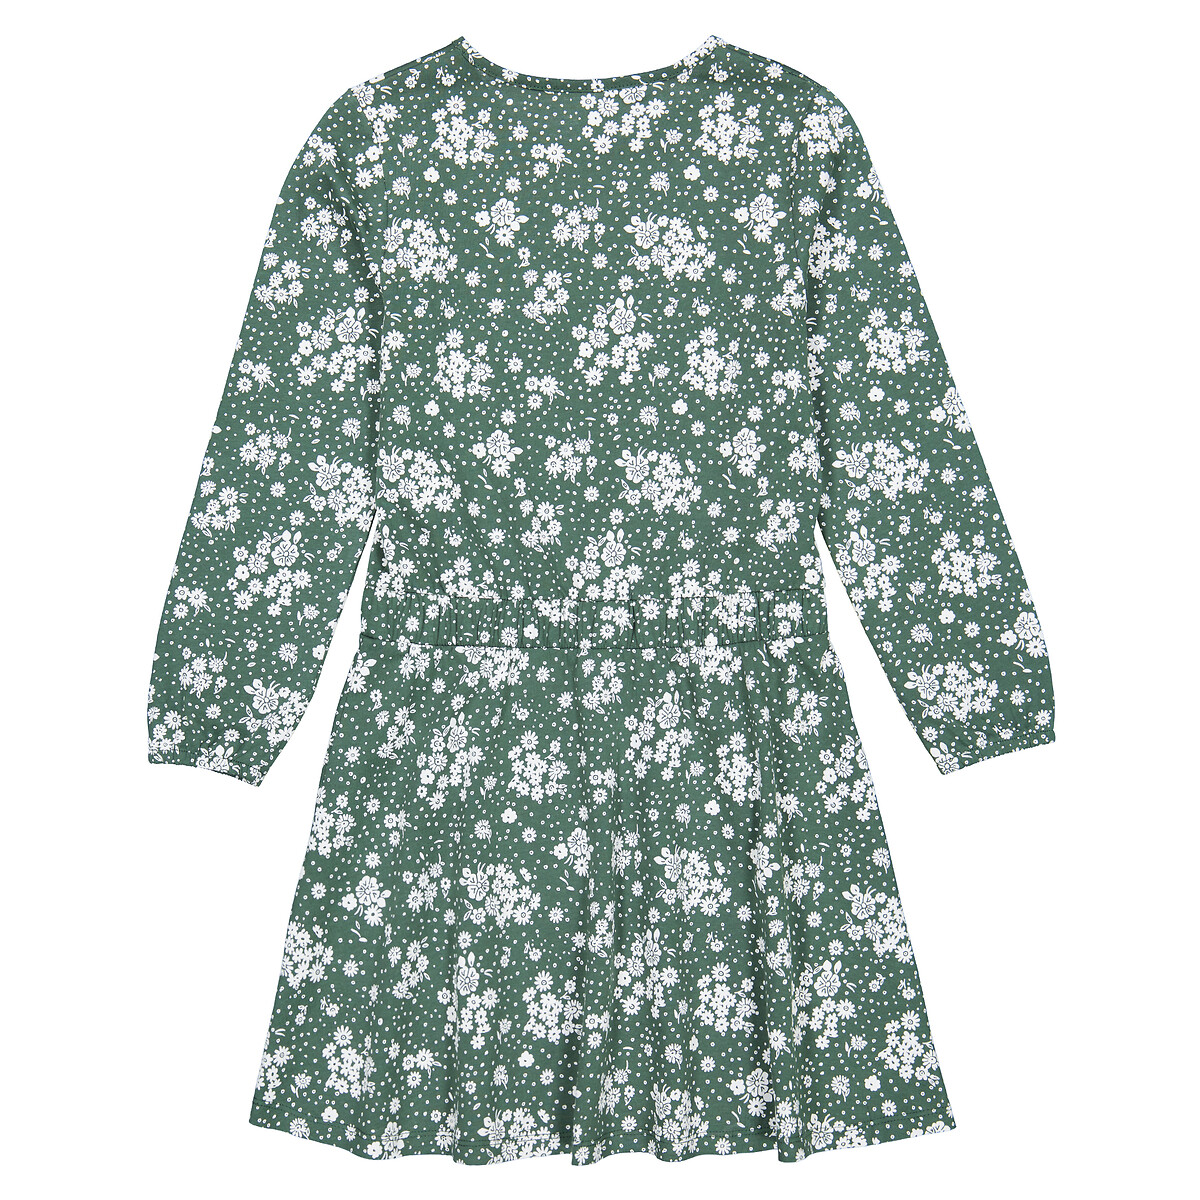 Платье С длинными рукавами цветочный принт 4 года - 102 см зеленый LaRedoute, размер 4 года - 102 см - фото 4